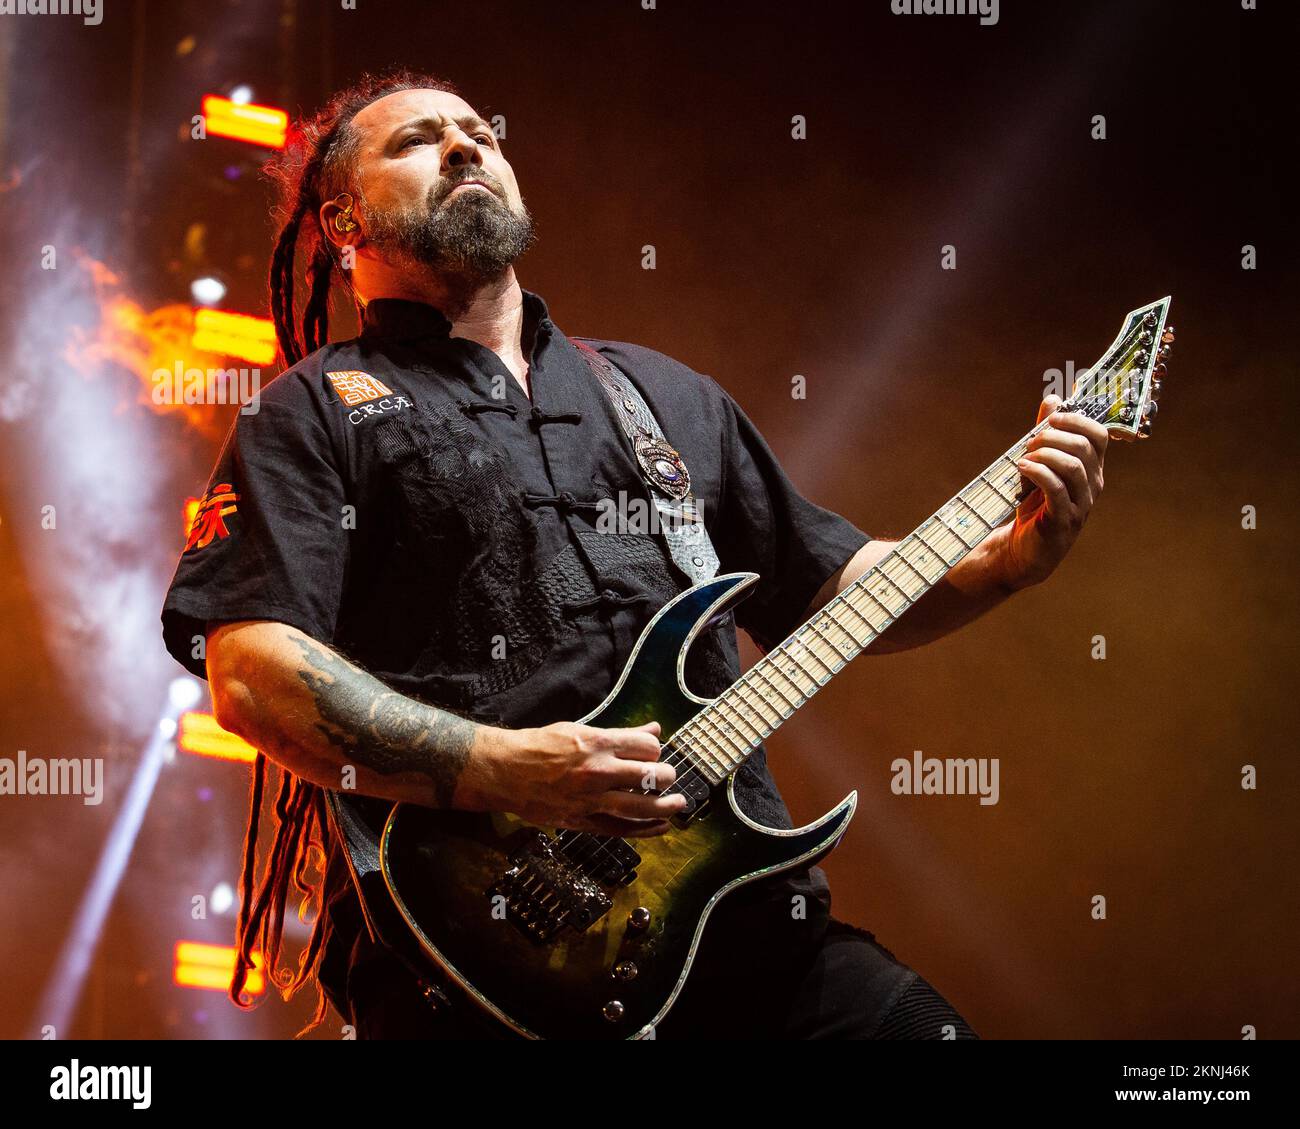 Zoltan Bathory von Five Finger Death Punch tritt live auf der Bühne auf Stockfoto